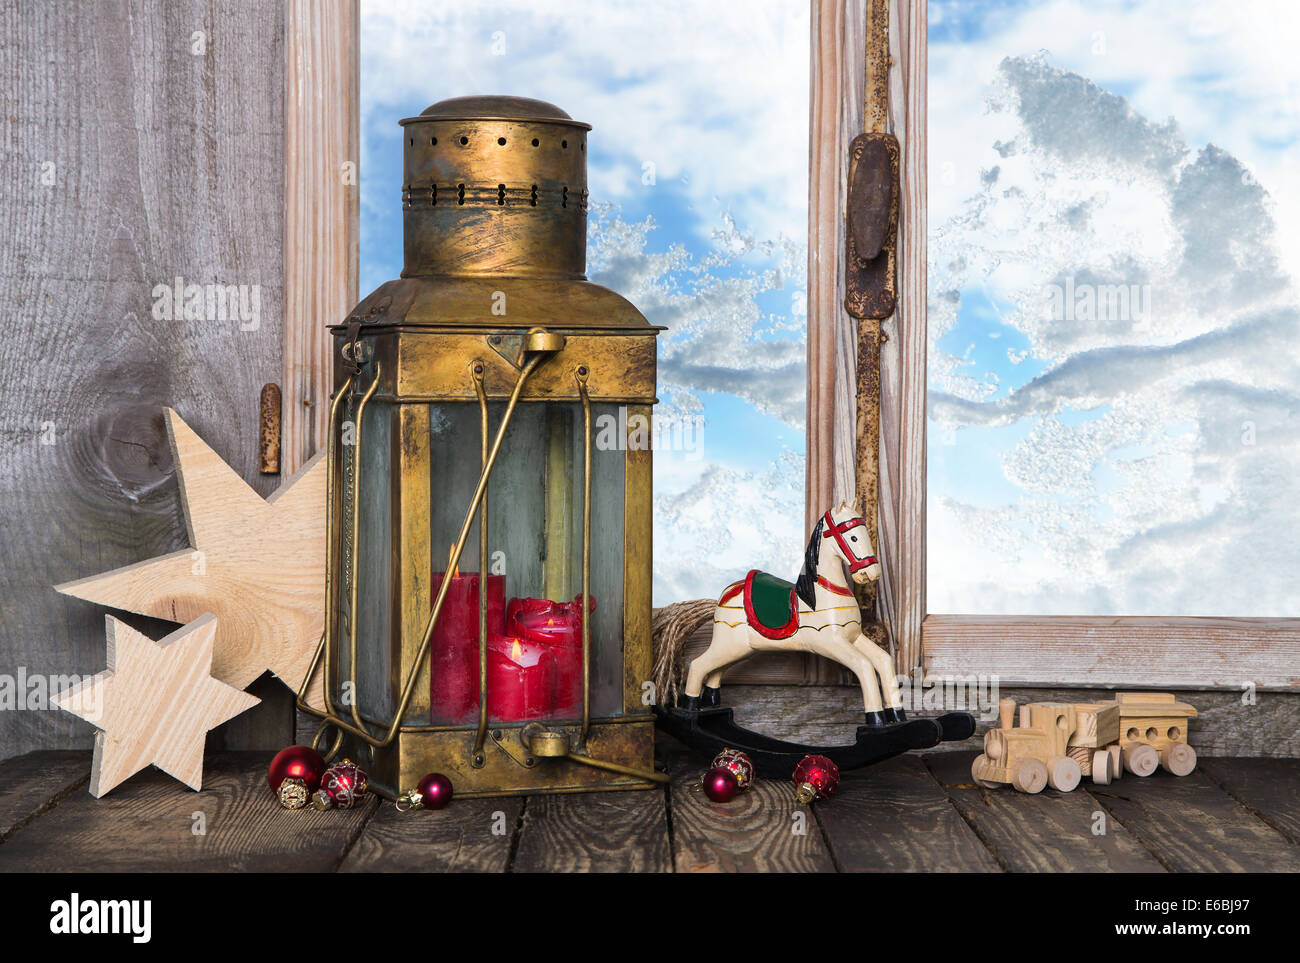 Vecchio nostalgico decorazione di Natale con vecchi giocattoli e una vecchia lanterna con candele sul davanzale della finestra. Foto Stock